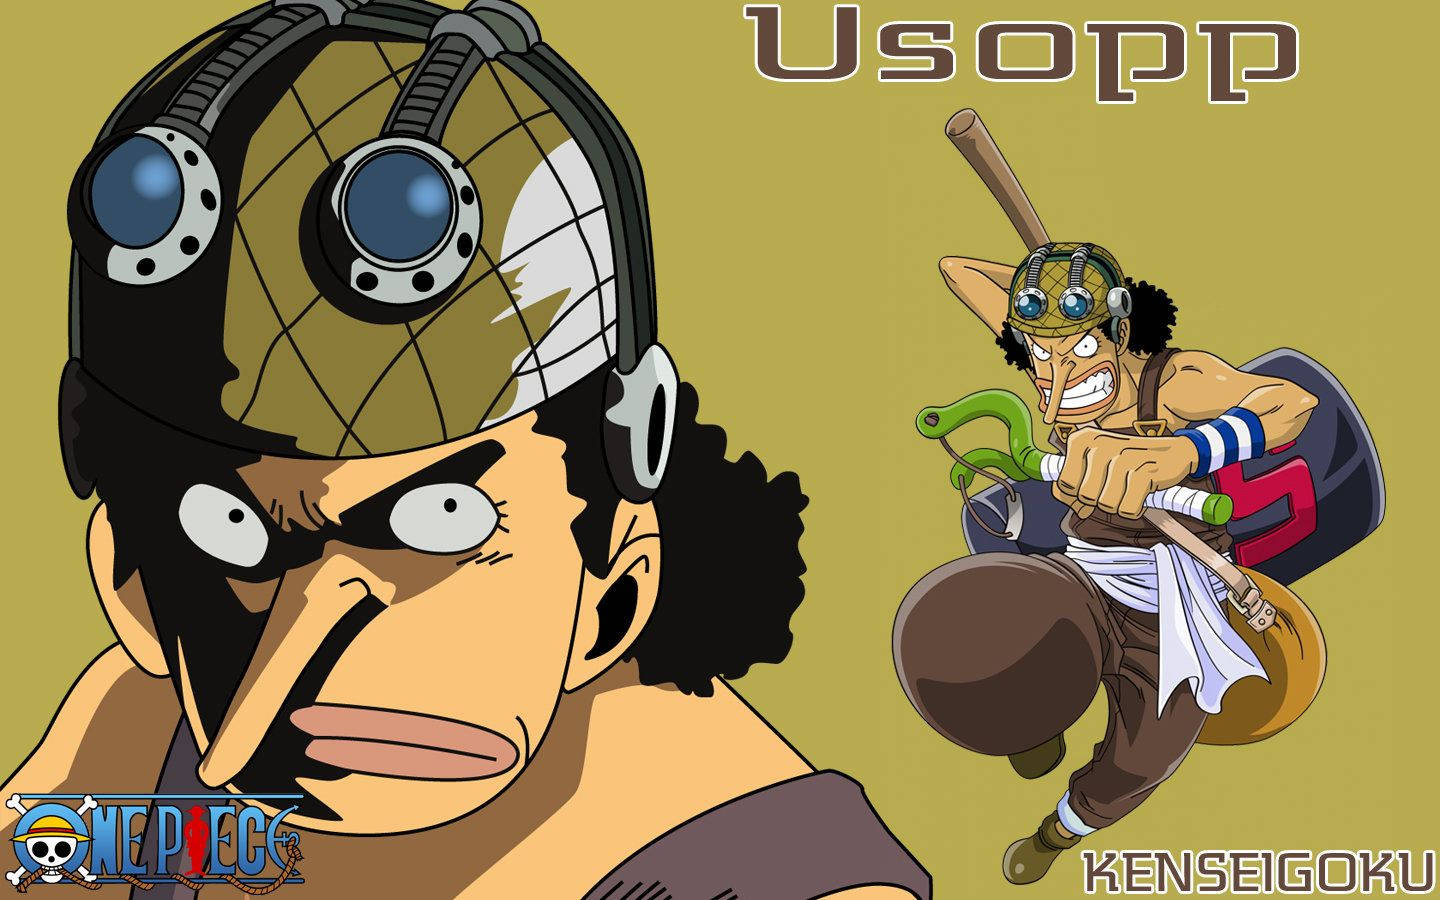 One Piece Usopp Bravest Warrior